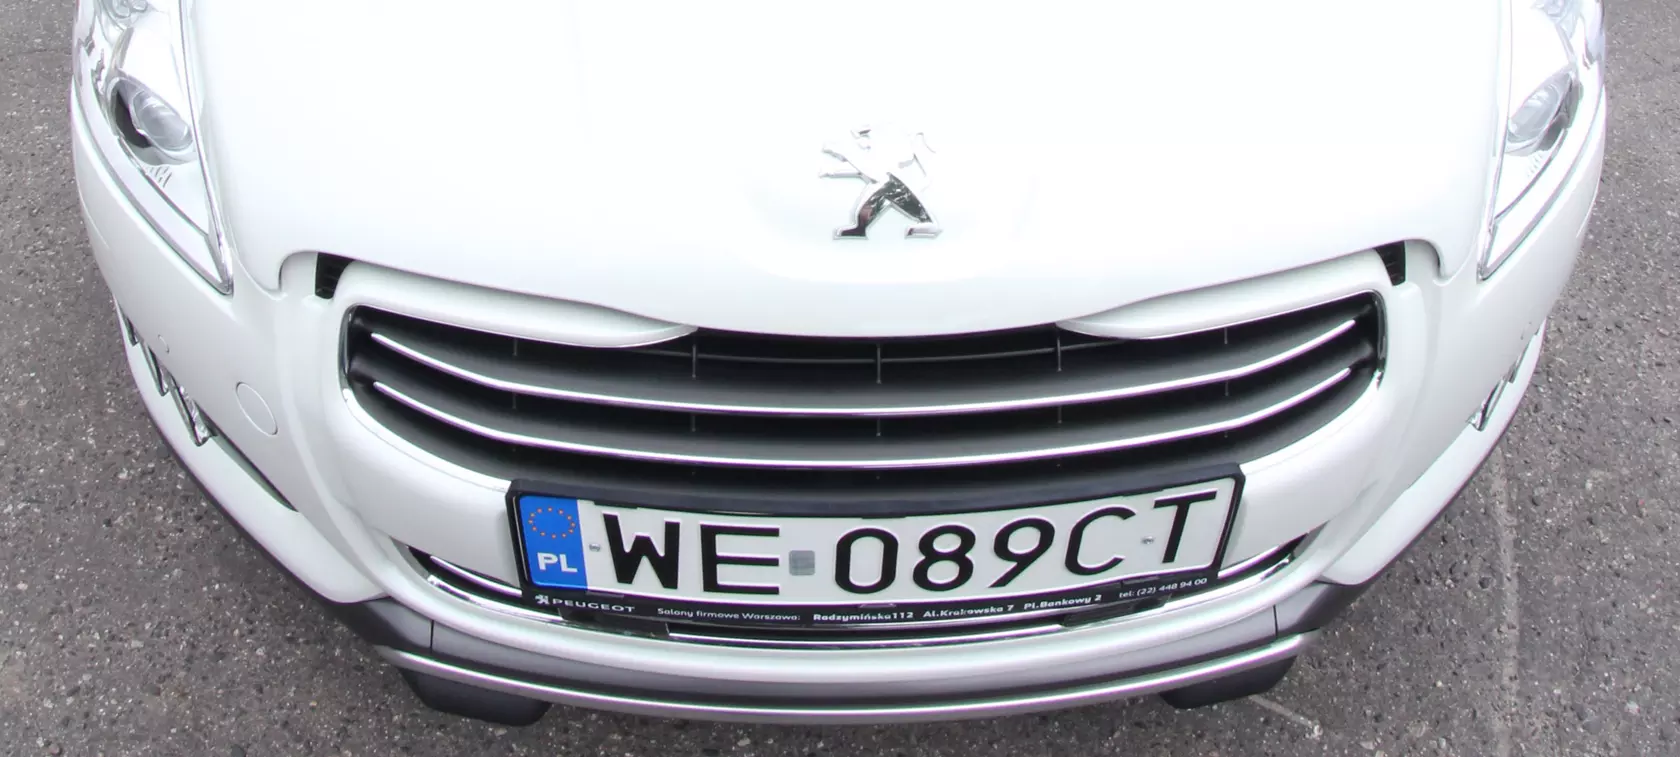 Peugeot 508 RXH - mało pali, dużo kosztuje